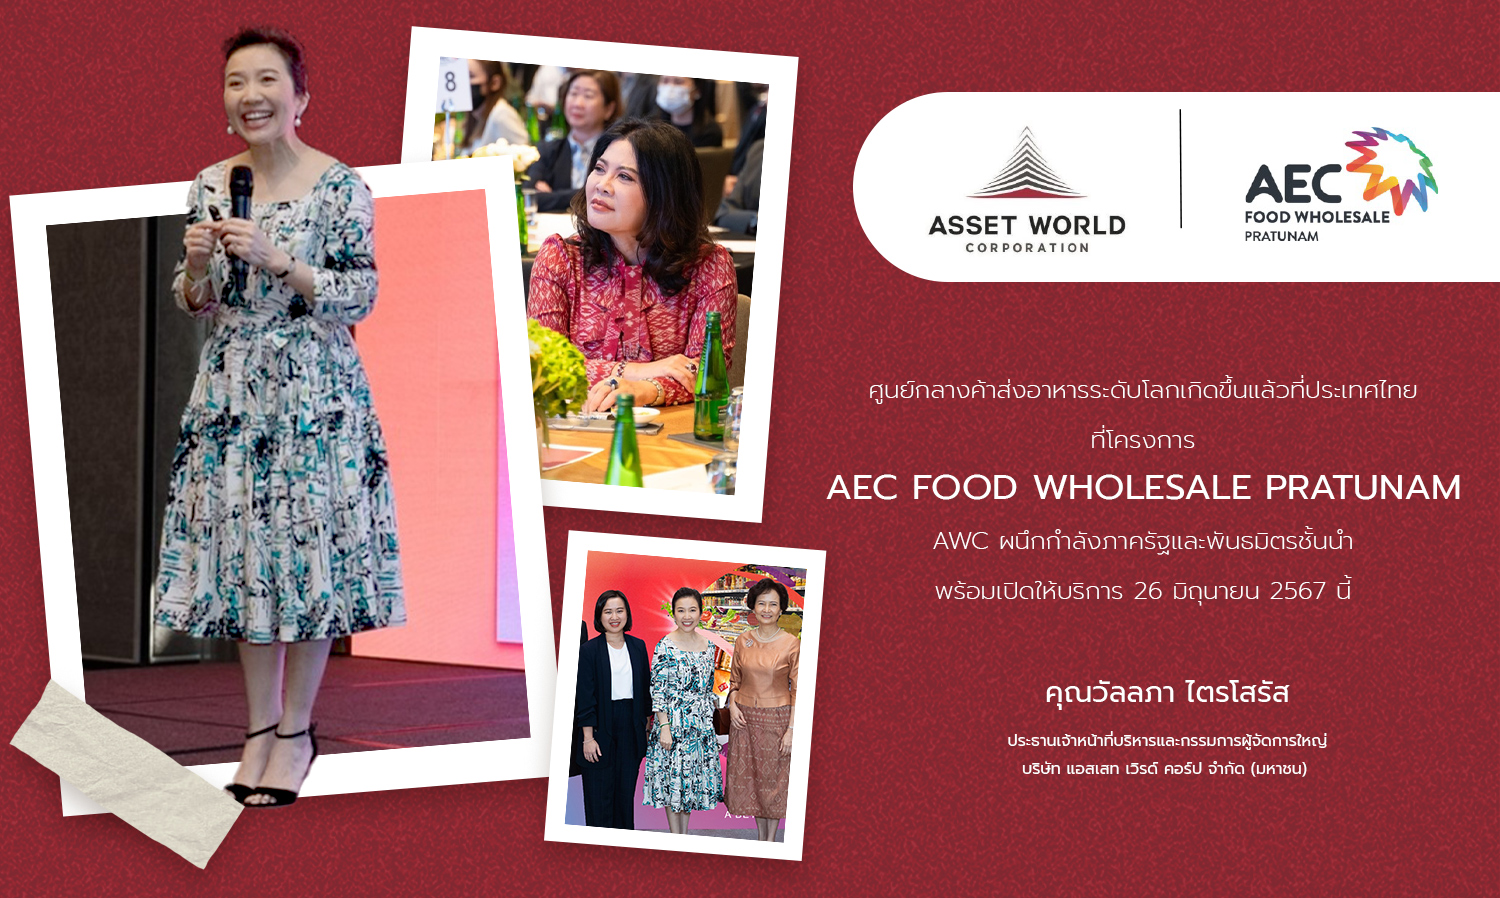 ศูนย์กลางค้าส่งอาหารระดับโลกเกิดขึ้นแล้วที่ประเทศไทย ที่โครงการ AEC FOOD WHOLESALE PRATUNAM AWC ผนึกกำลังภาครัฐและพันธมิตรชั้นนำ พร้อมเปิดให้บริการ 26 มิถุนายน 2567 นี้